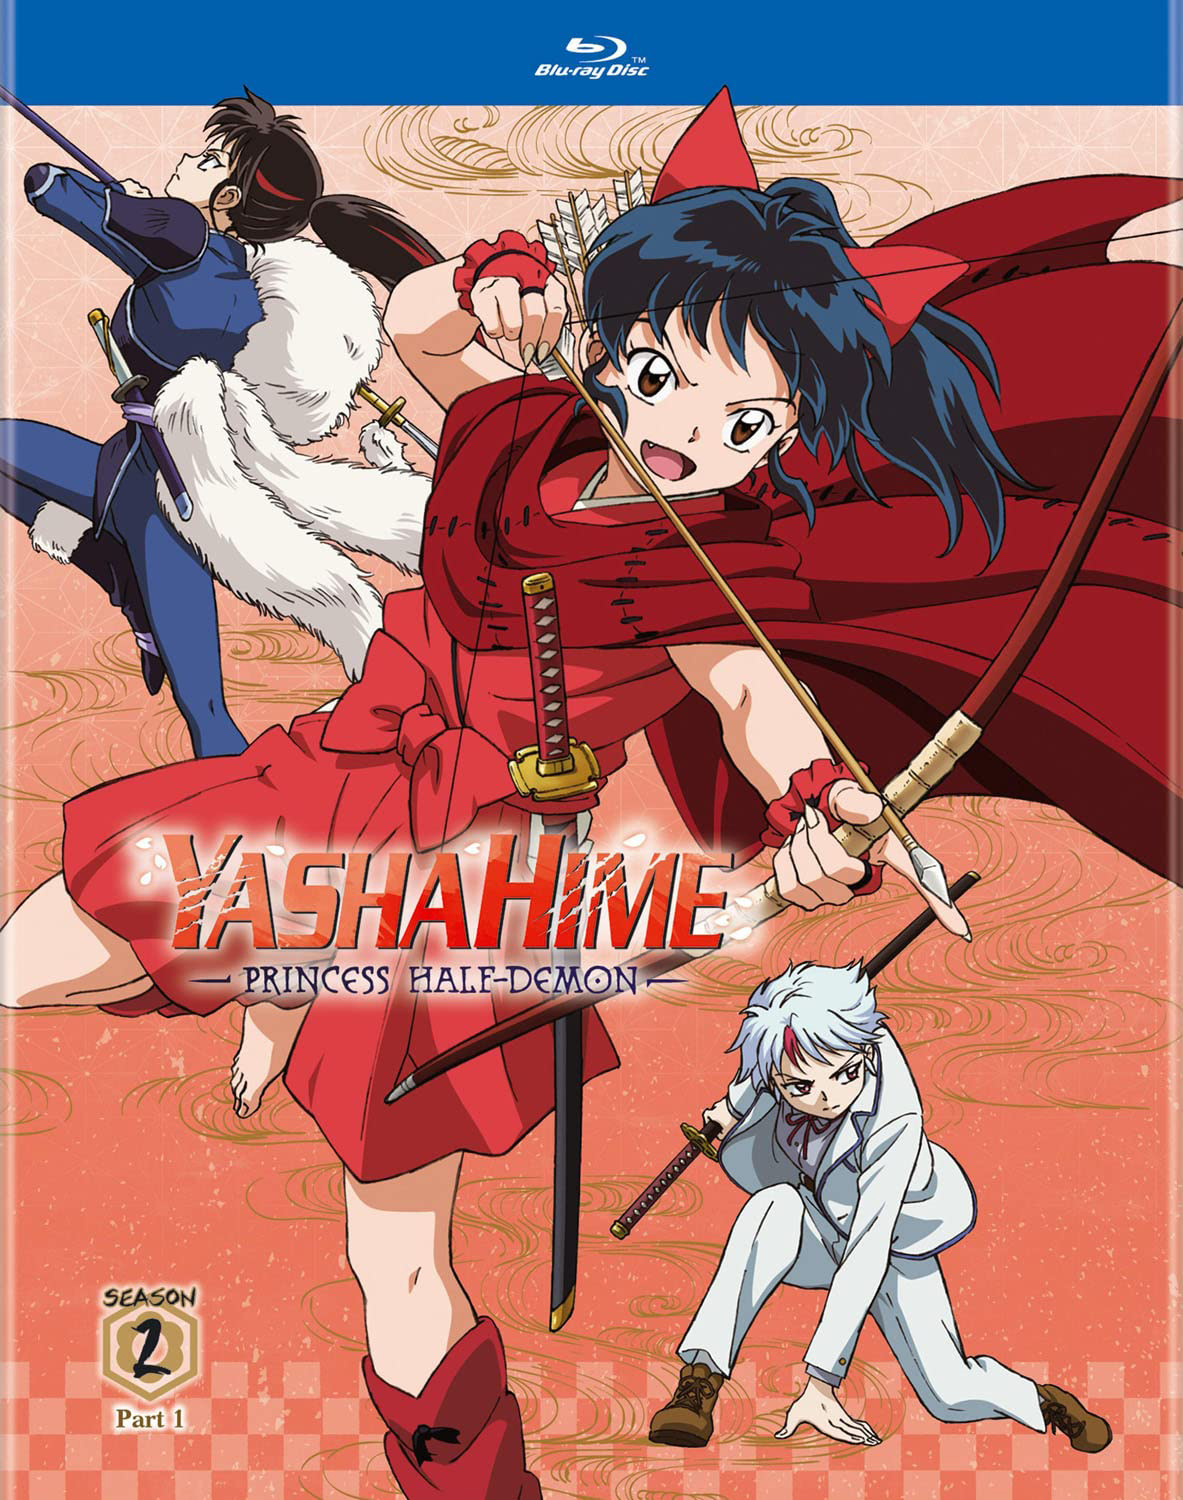 Yashahime: Princess Half-Demon (TV) - Anime News Network